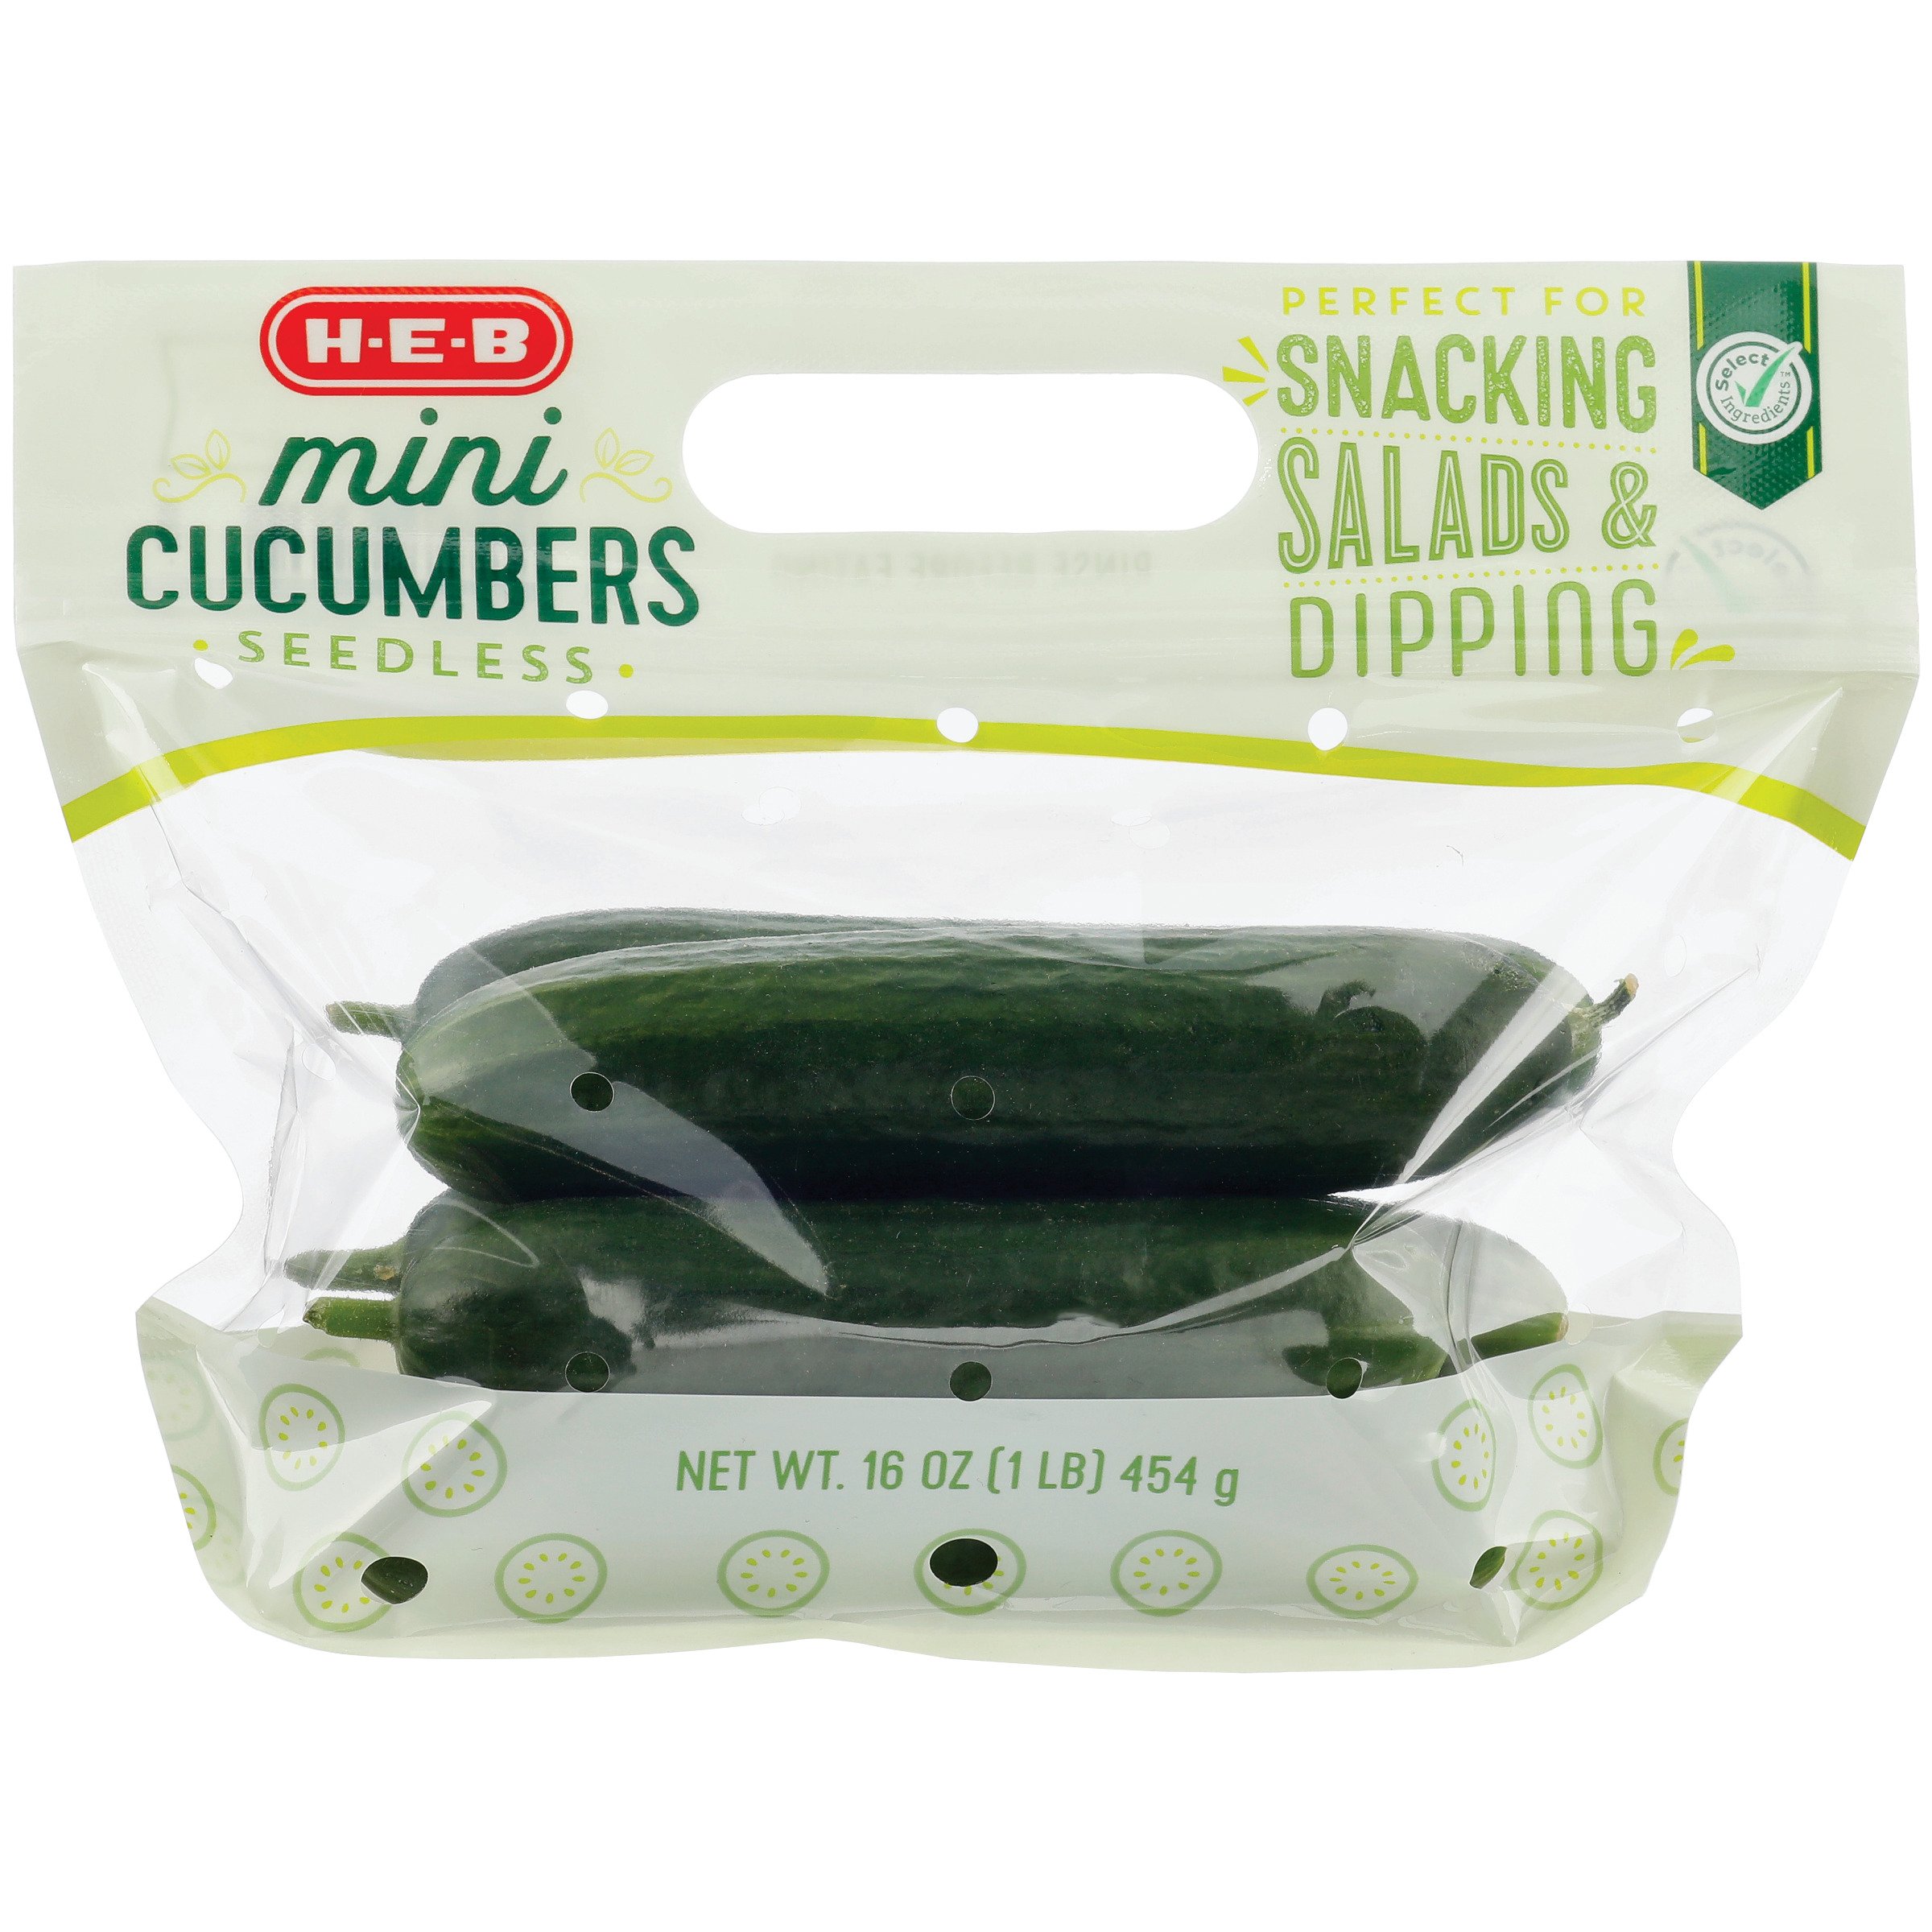 H-E-B Fresh Mini Seedless Cucumbers